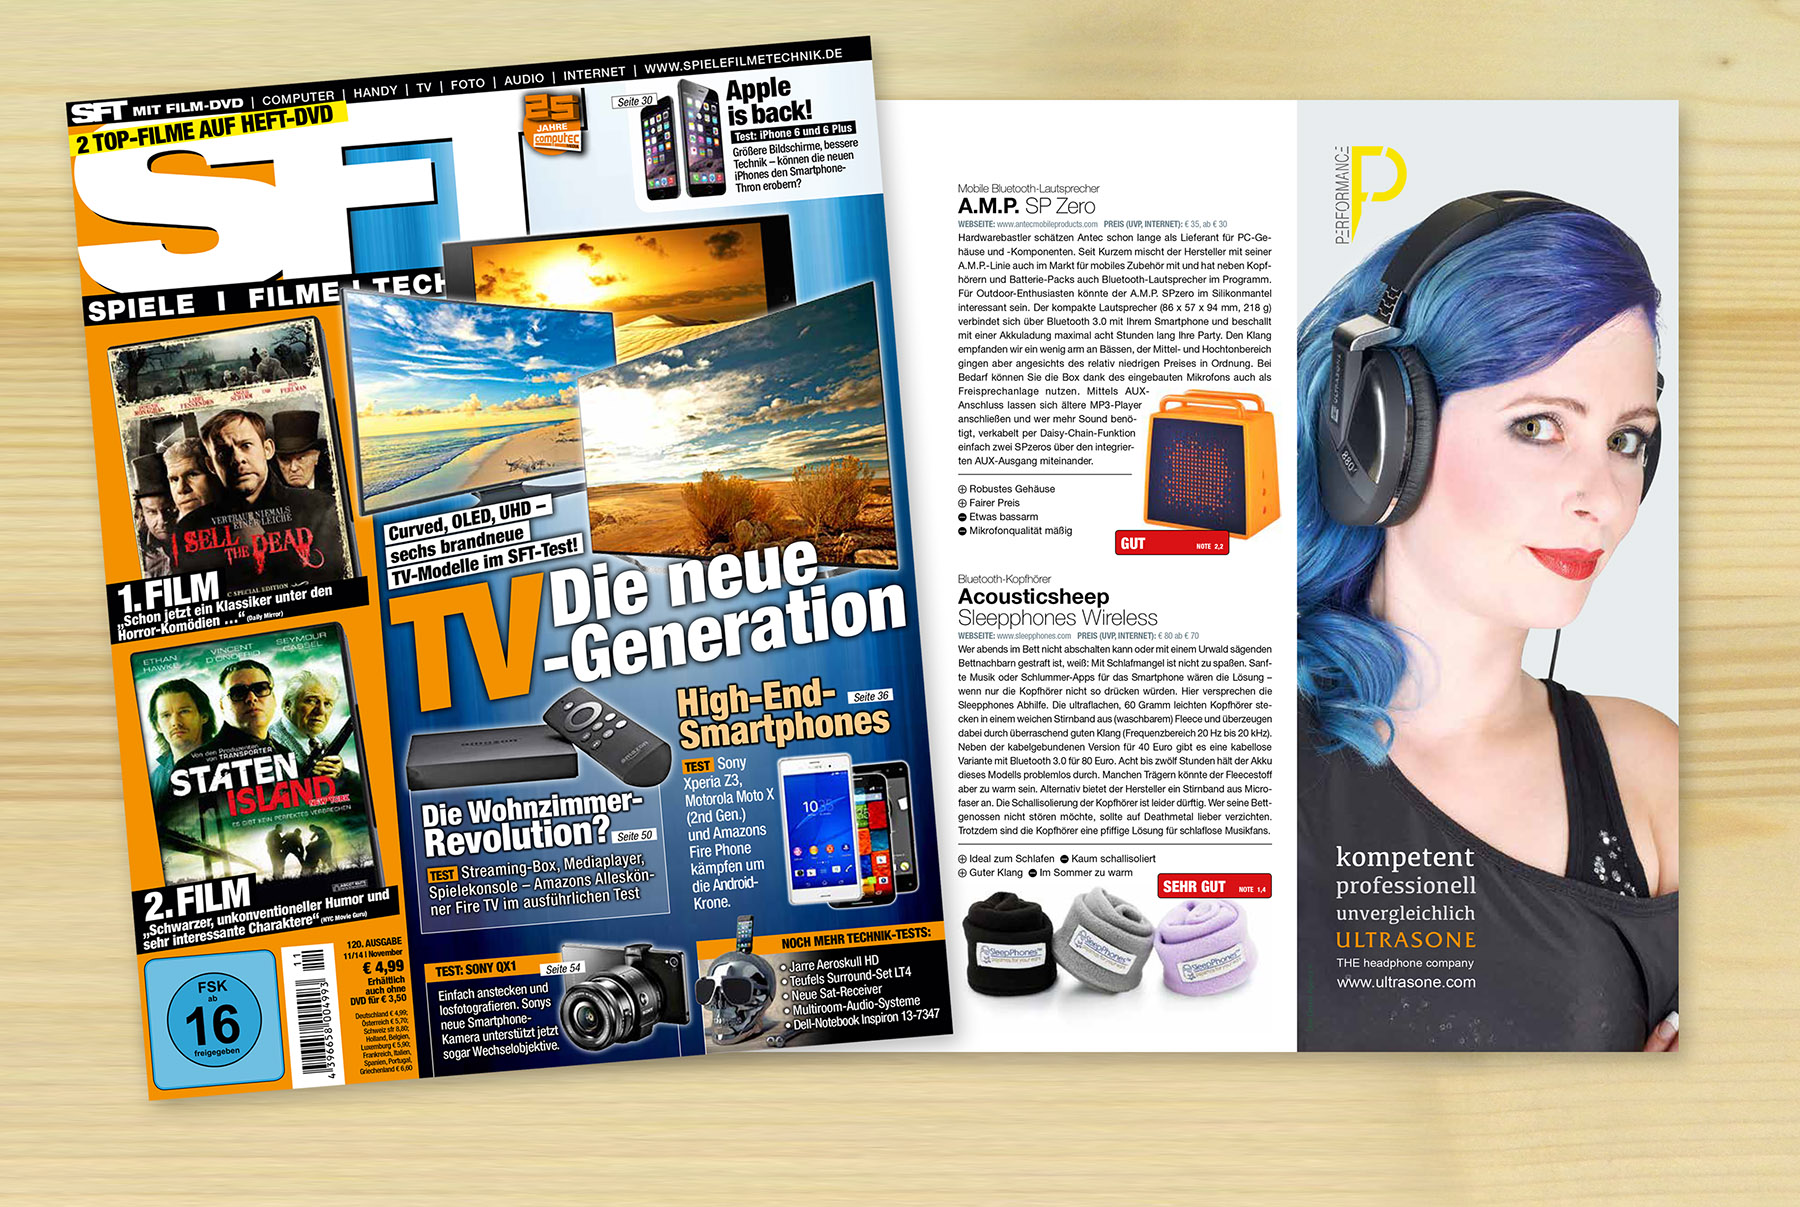 SleepPhones feature in Spiele Filme Technik Magazine in Germany